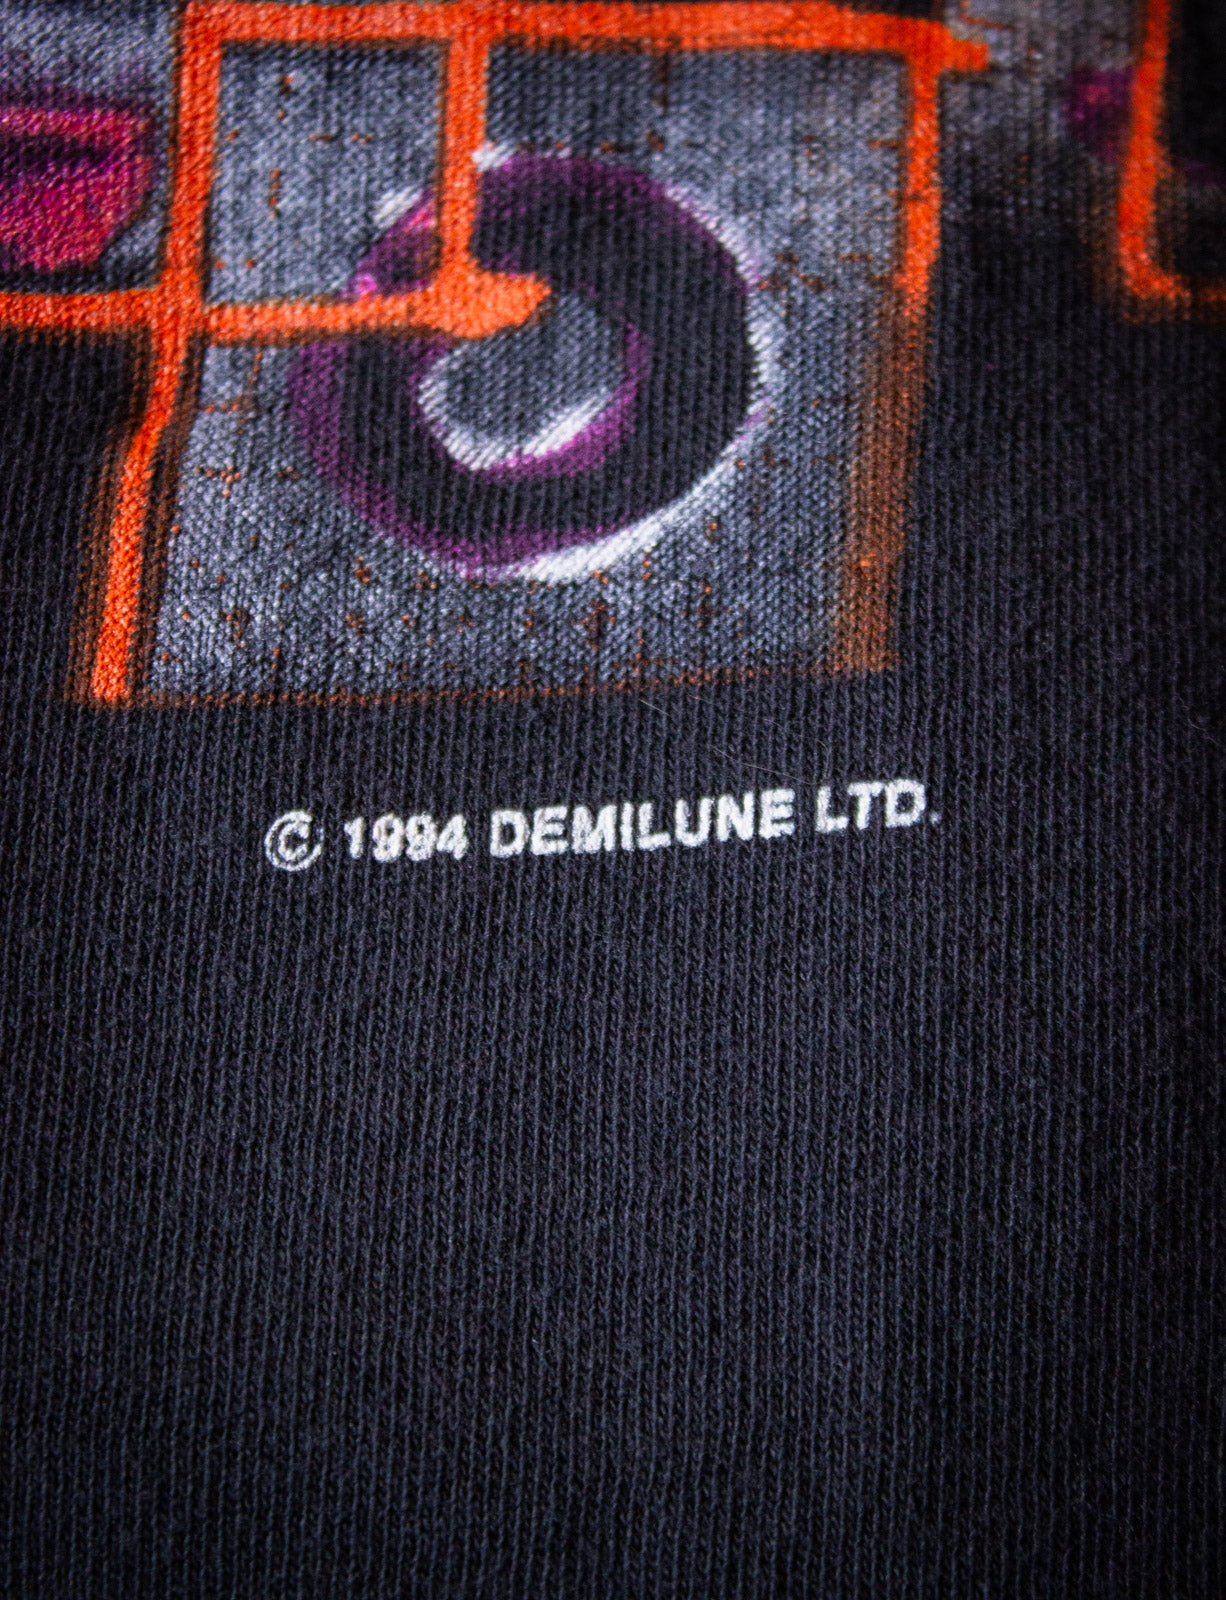 Vintage Depeche Mode Devotional Tour Concert T Shirt 1994 Black Large